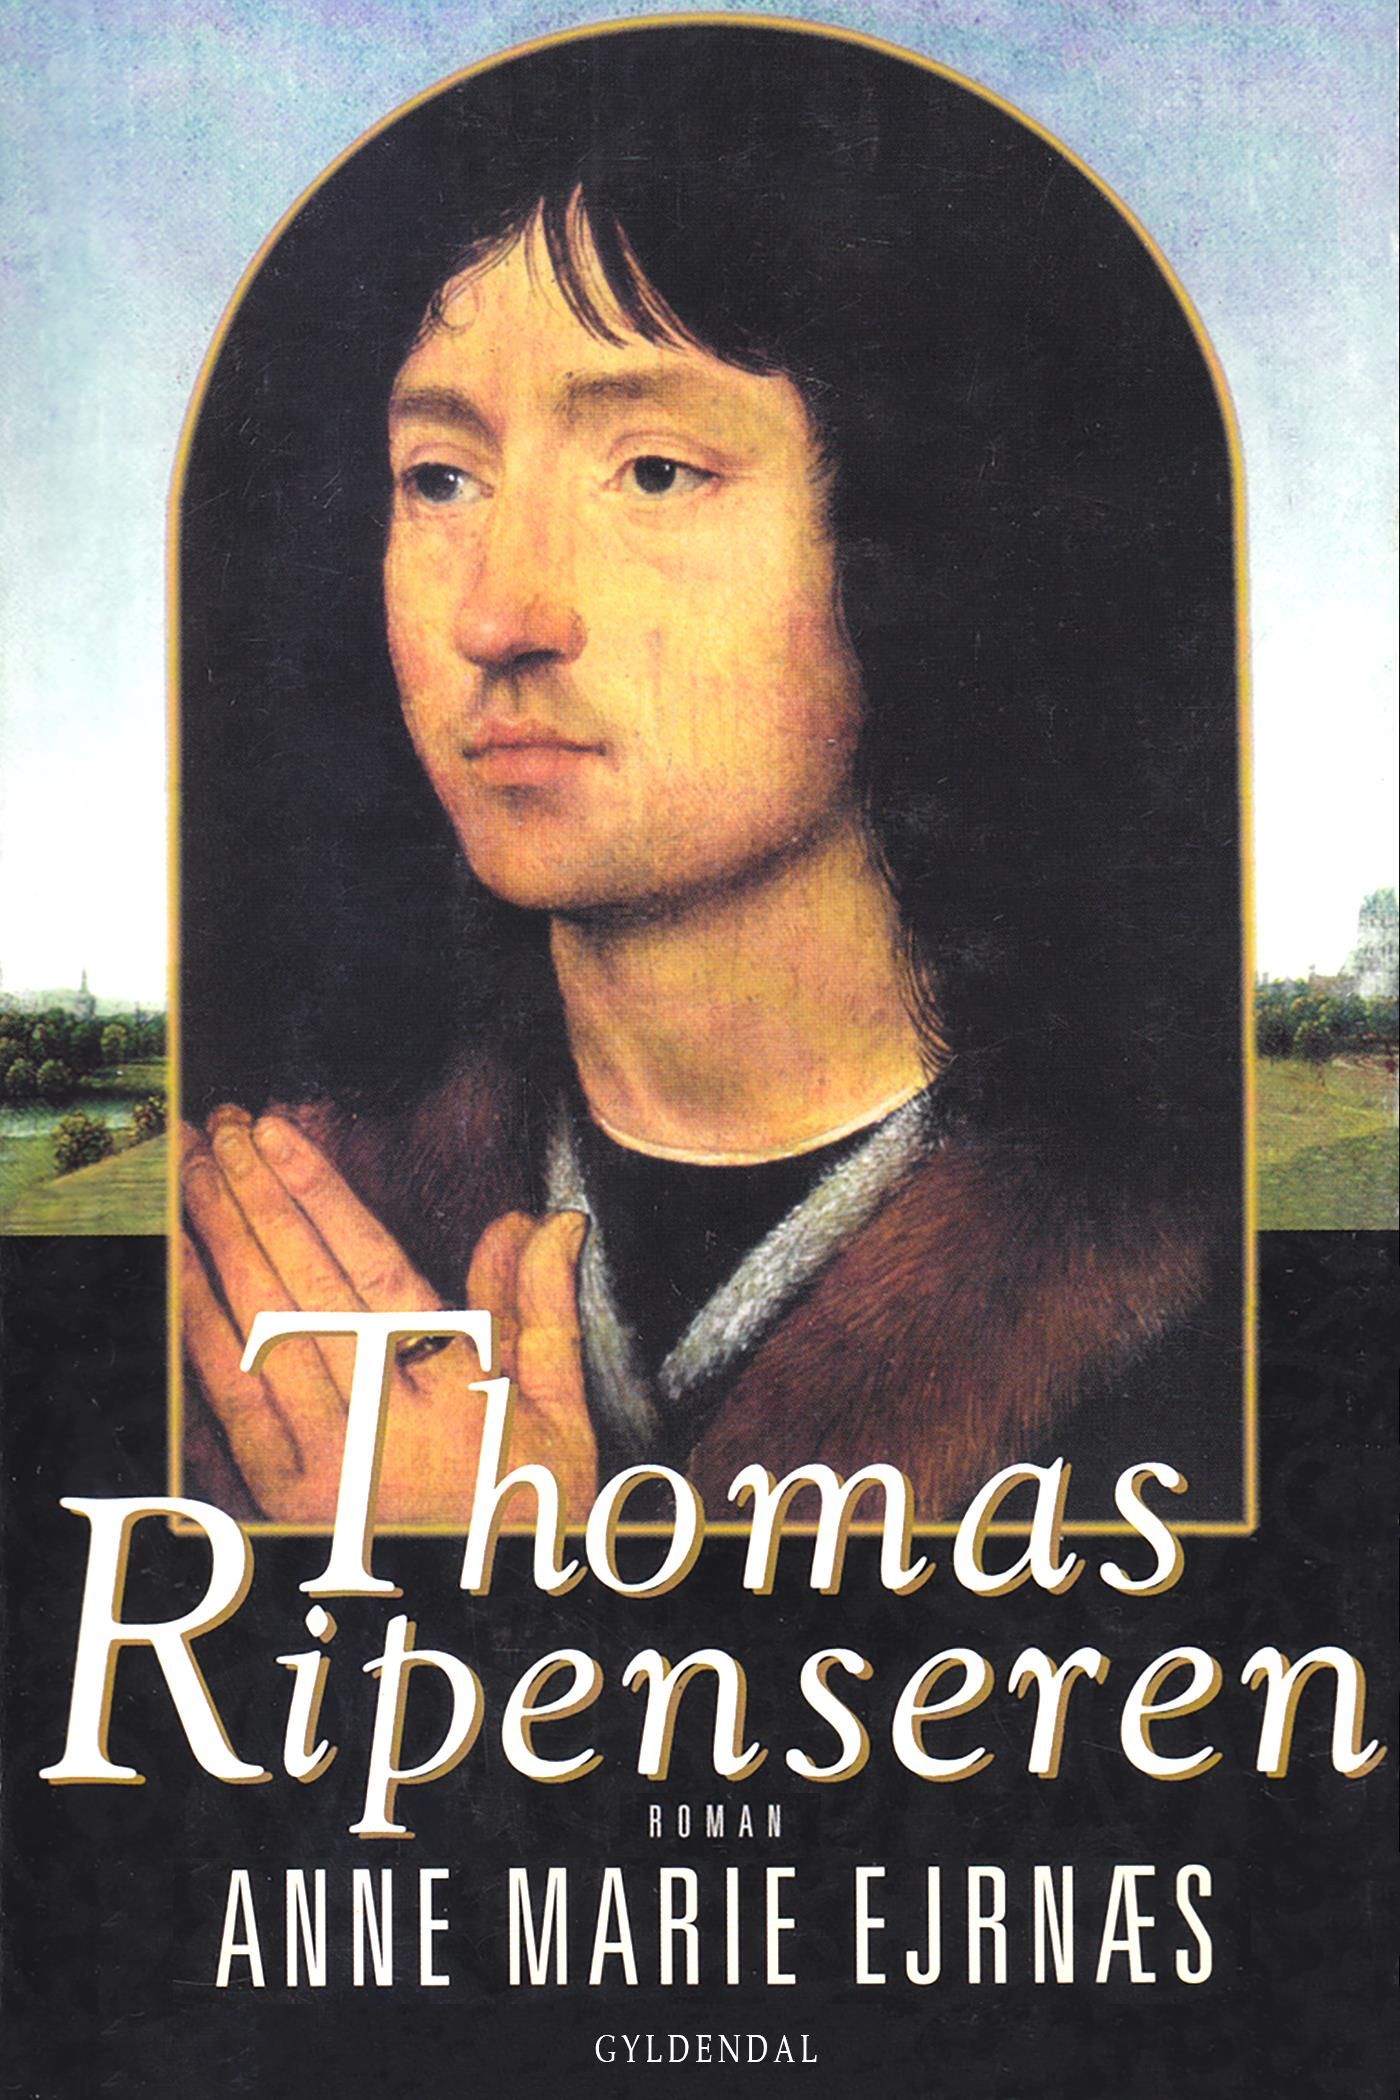 Thomas Ripenseren, e-bog af Anne Marie Ejrnæs